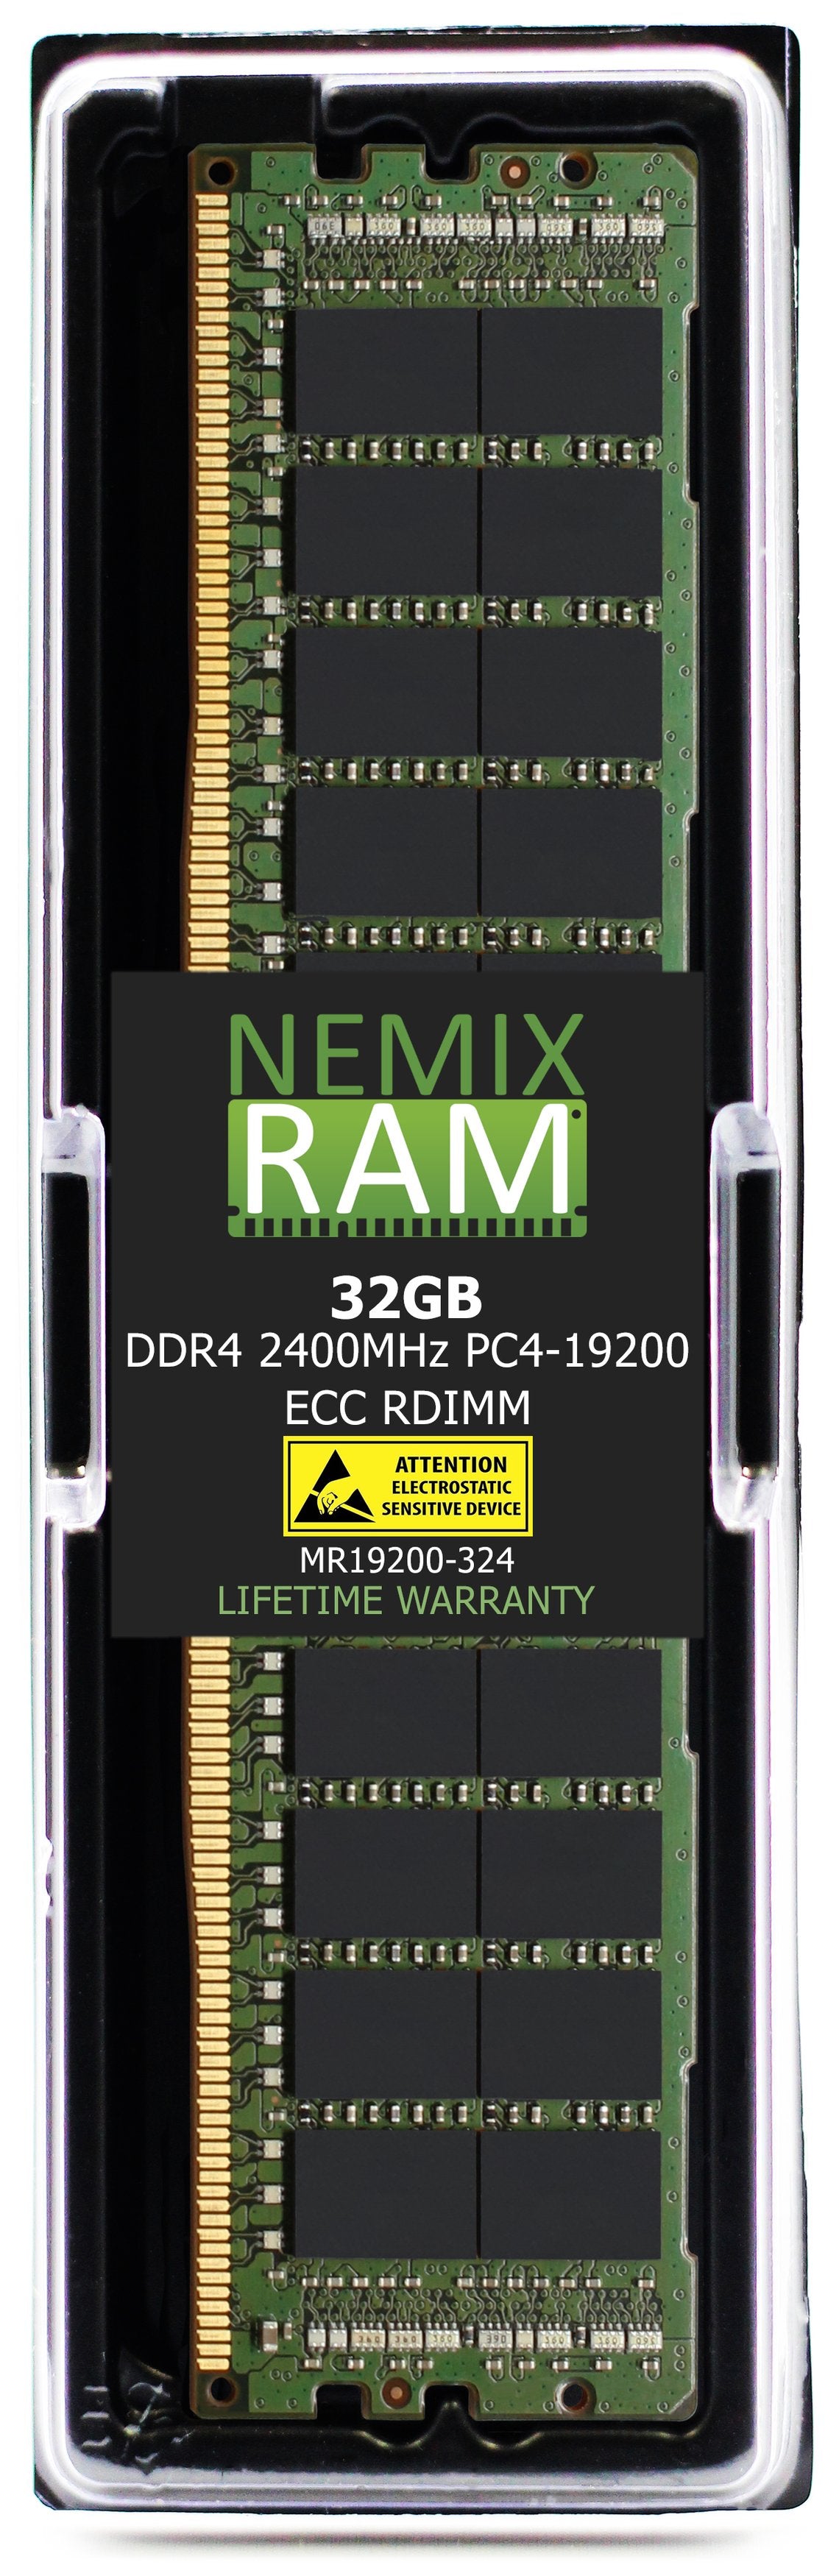 Hynix HMA84GR7AFR4N-UH 32GB DDR4 2400MHZ PC4-19200 RDIMM Compatible Memory Module